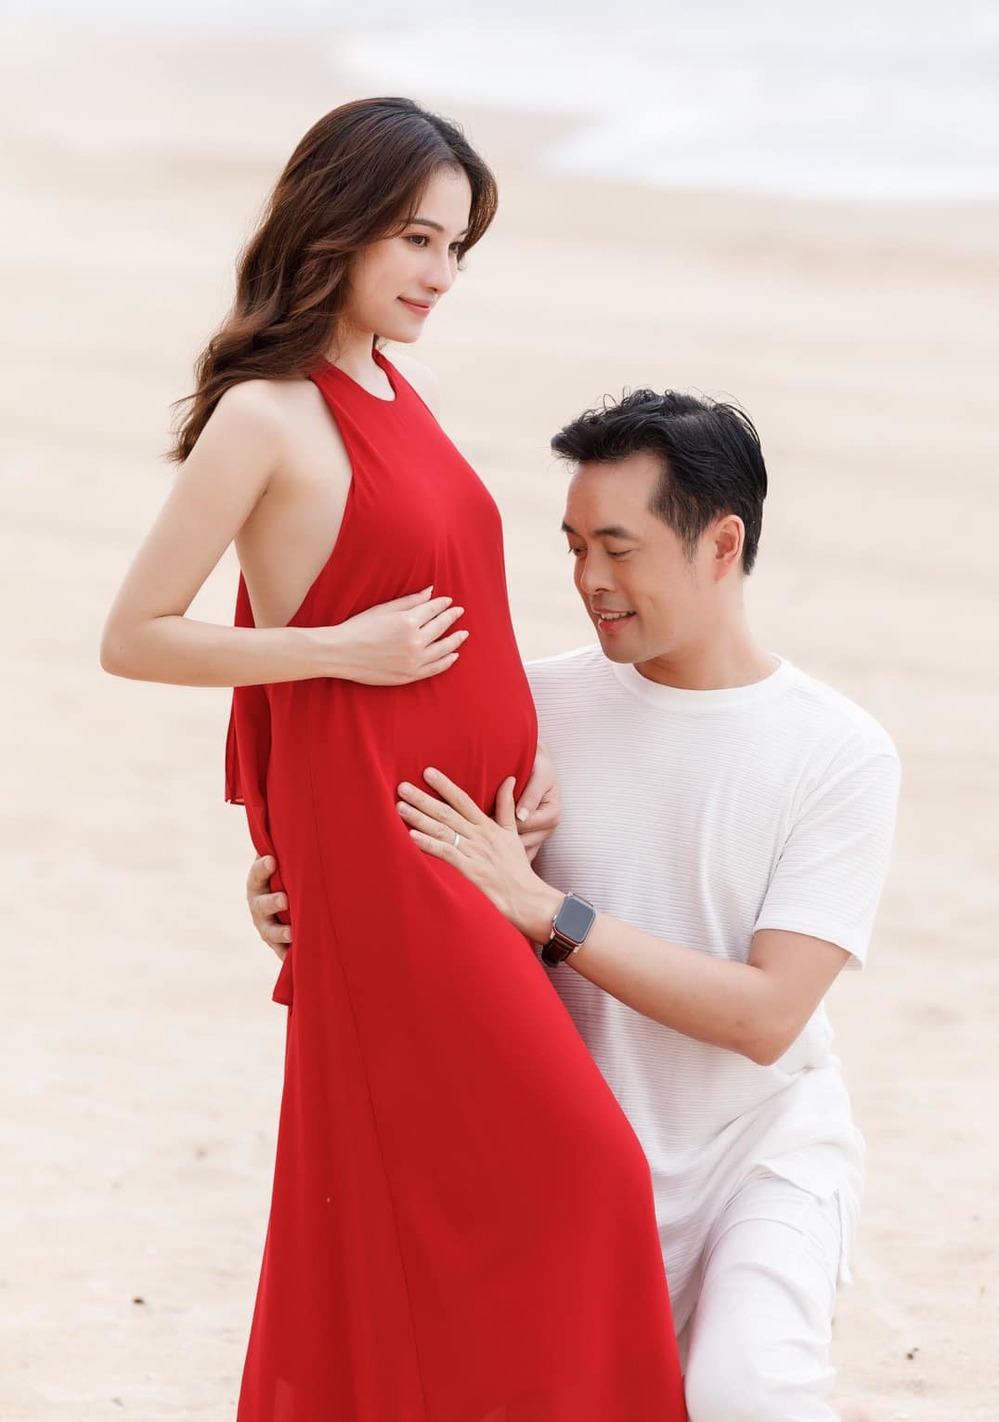  
Vợ chồng anh chọn cách đứng chụp ảnh trước bãi biển, nữ ca sĩ để lộ bụng bầu. (Ảnh: FBNV) - Tin sao Viet - Tin tuc sao Viet - Scandal sao Viet - Tin tuc cua Sao - Tin cua Sao